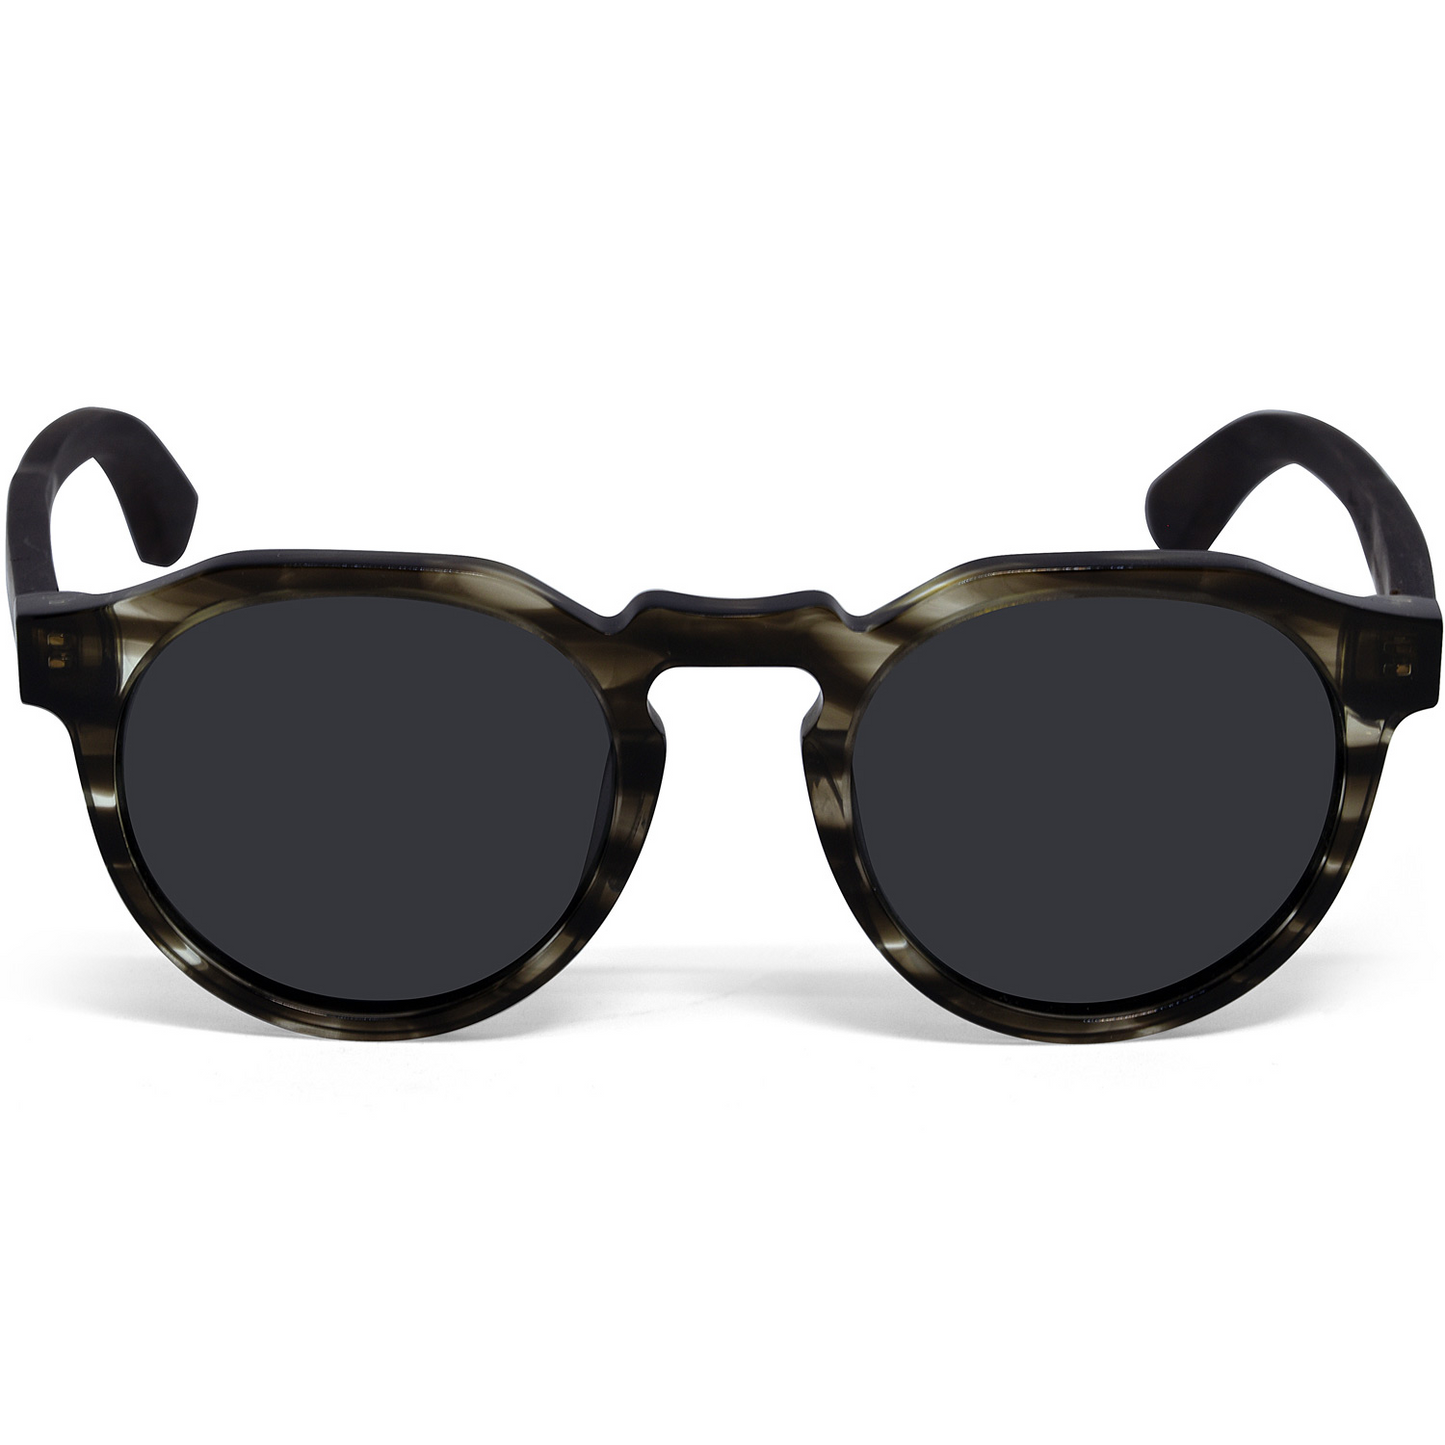 Ebony wood panto sunglasses with smog frame and black polarized lenses